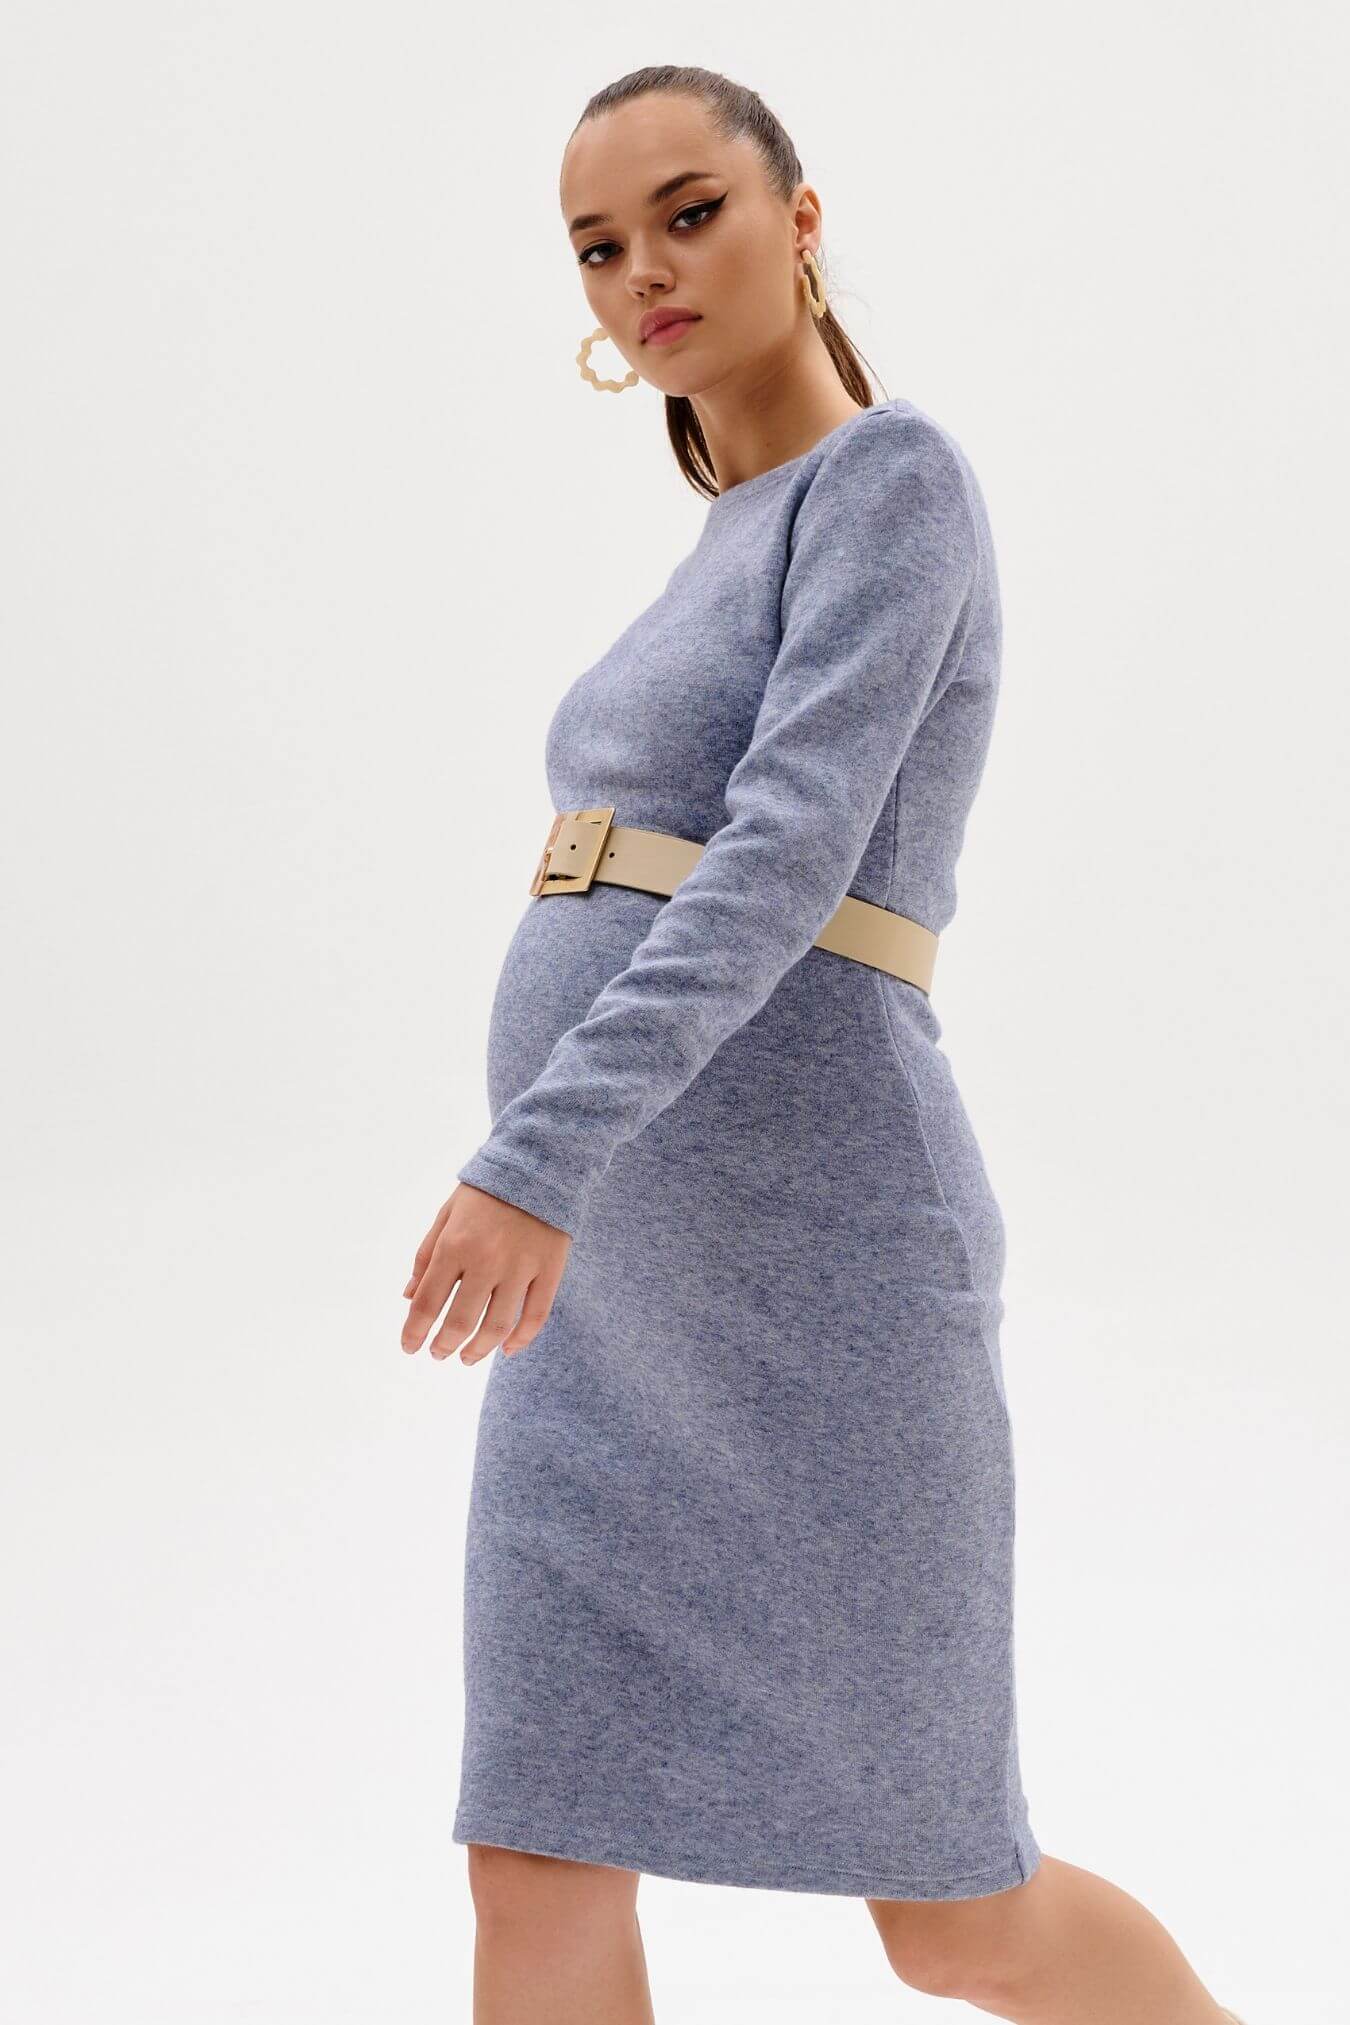 Платье для беременных женское трикотажное повседневное теплое в офис / Happy Moms